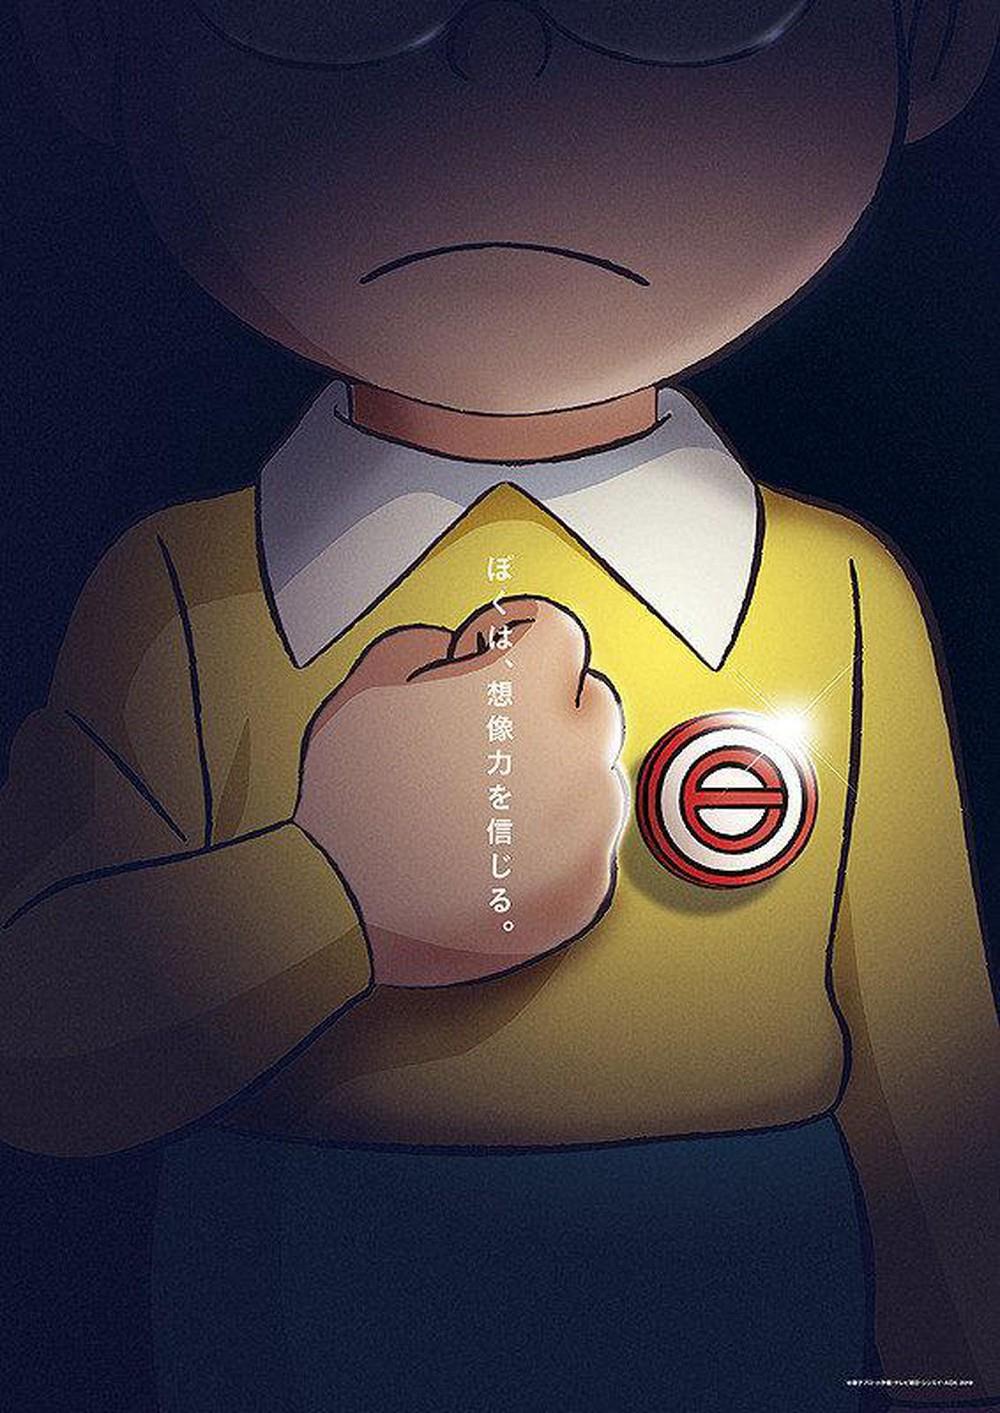 Chấn Động Giả Thuyết: Nobita Trong Tương Lai Làm Bá Chủ Thế Giới, Doraemon  Là Đặc Vụ Thời Gian?